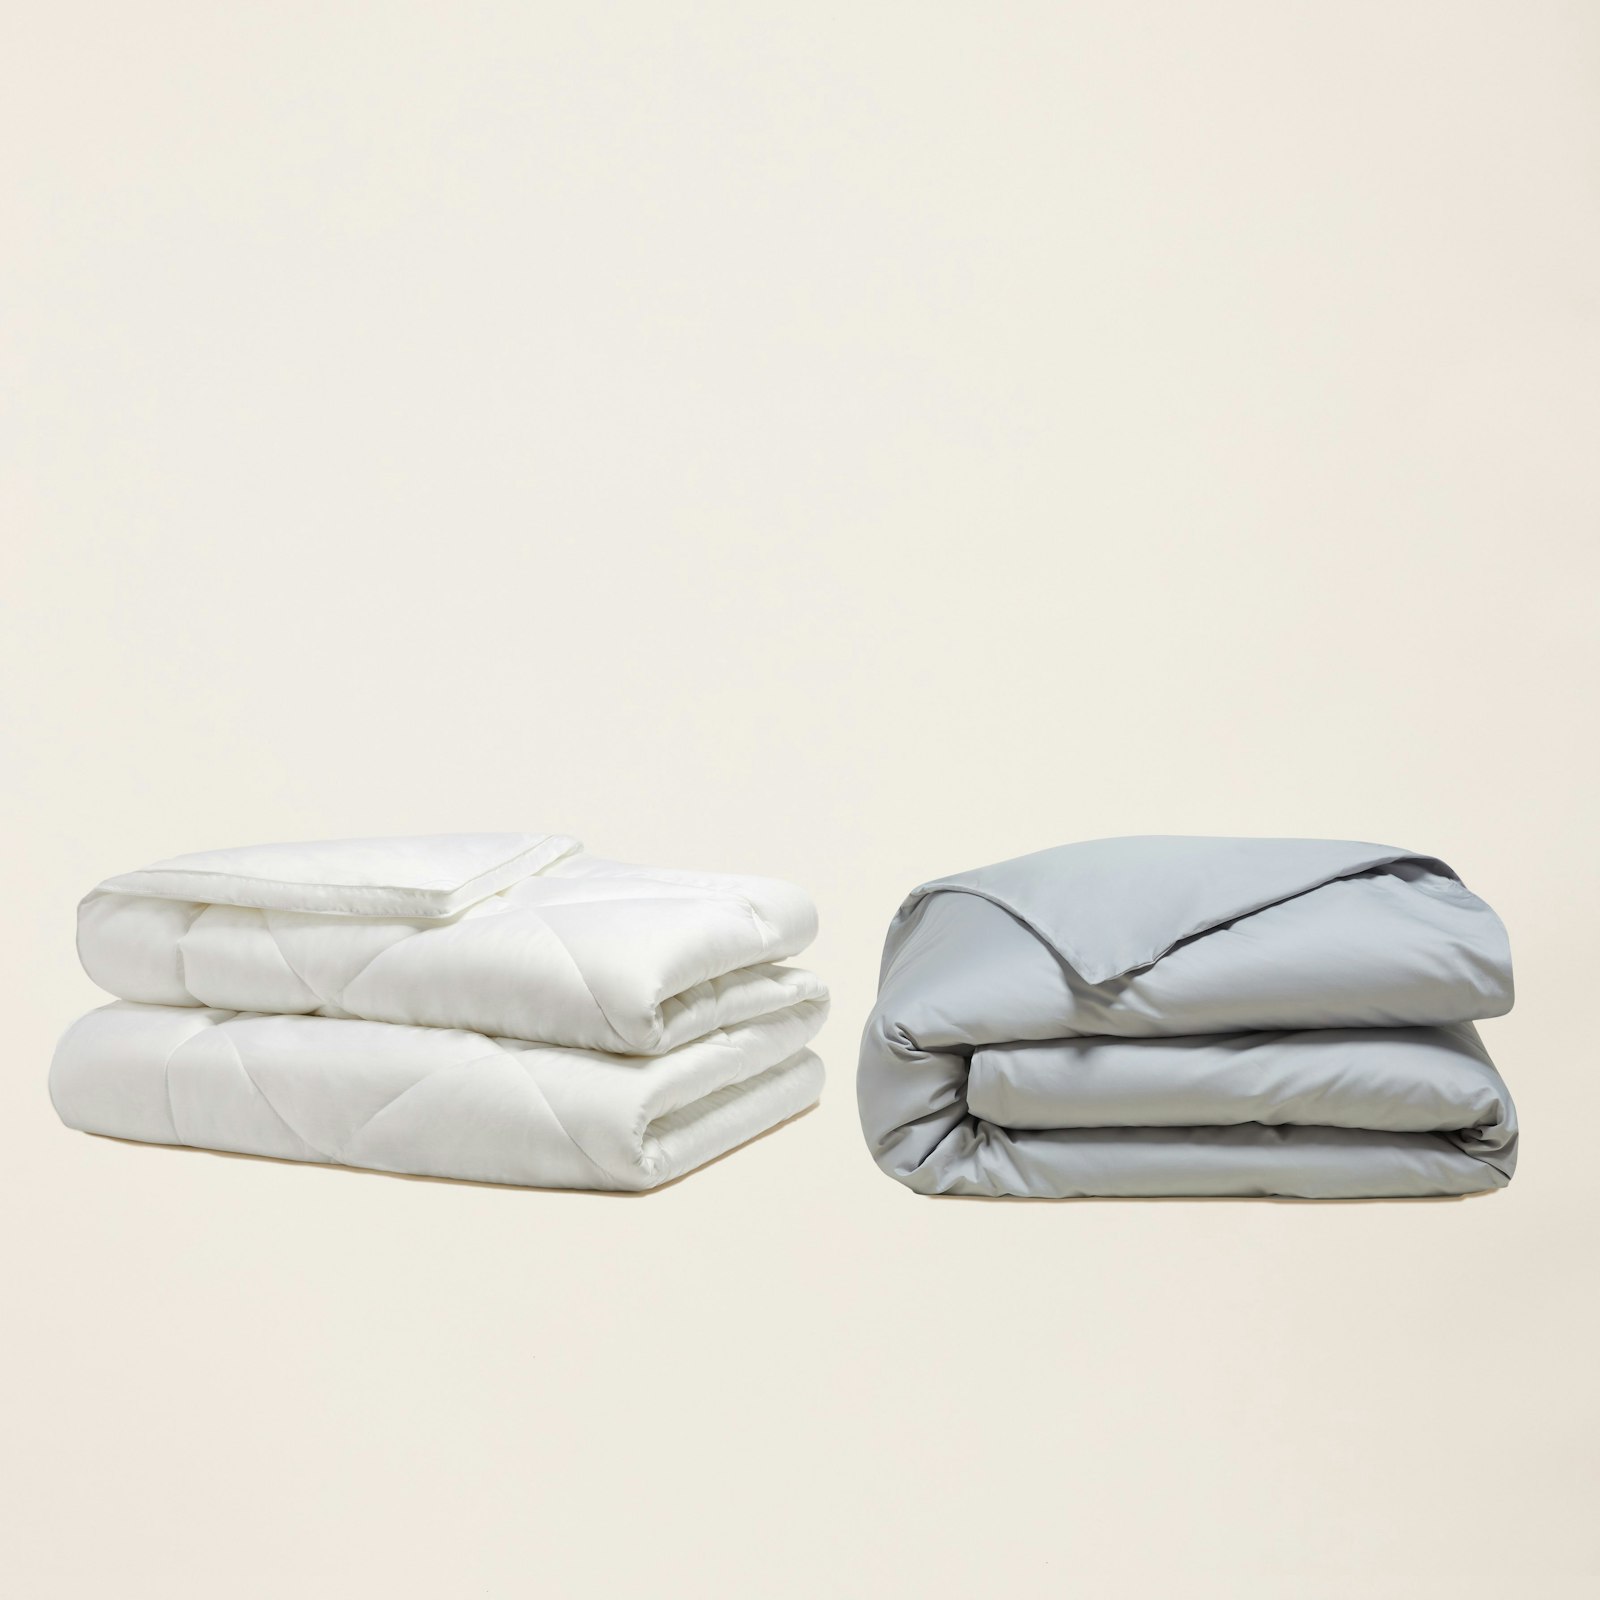 Eucalyptus Down Comforter + Duvet Cover Gray.jpeg